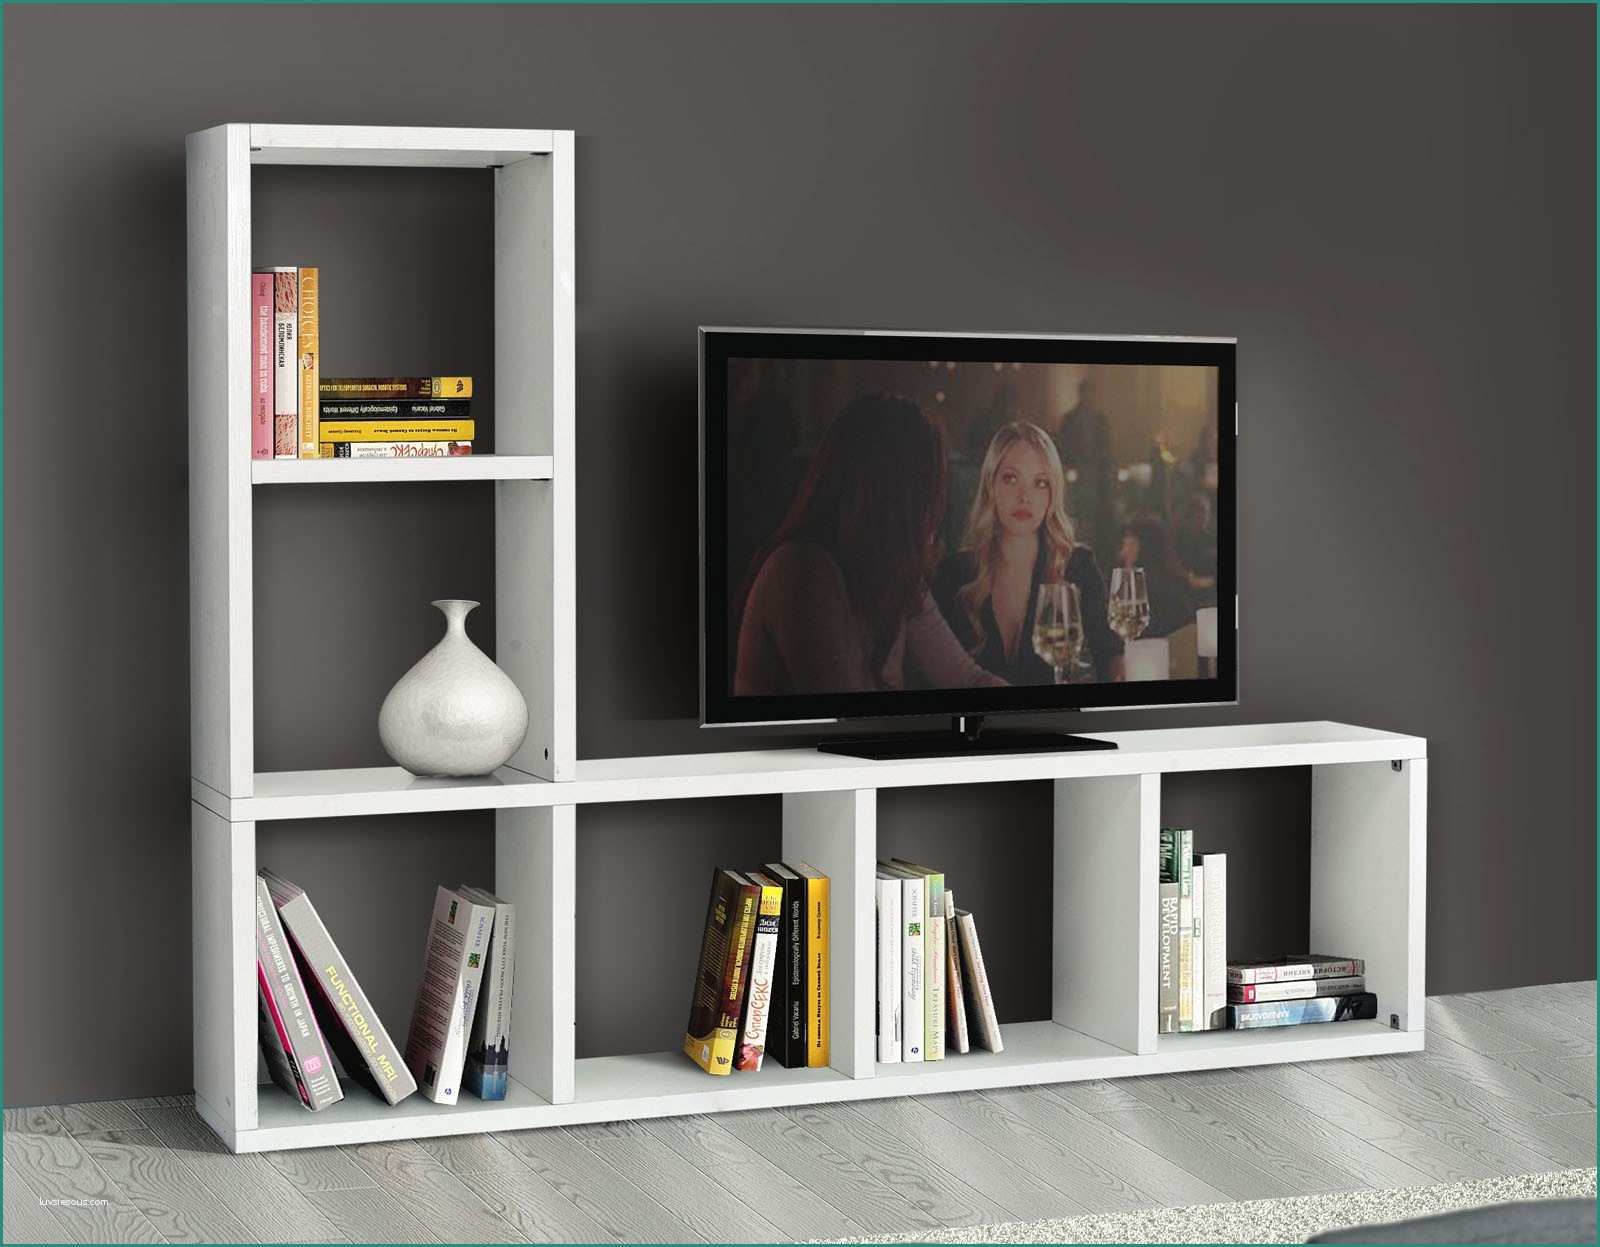 Porta Tv A Parete sospesi E Mobili Divisori Bifacciali Amazing Librerie Divisorie soggiorno